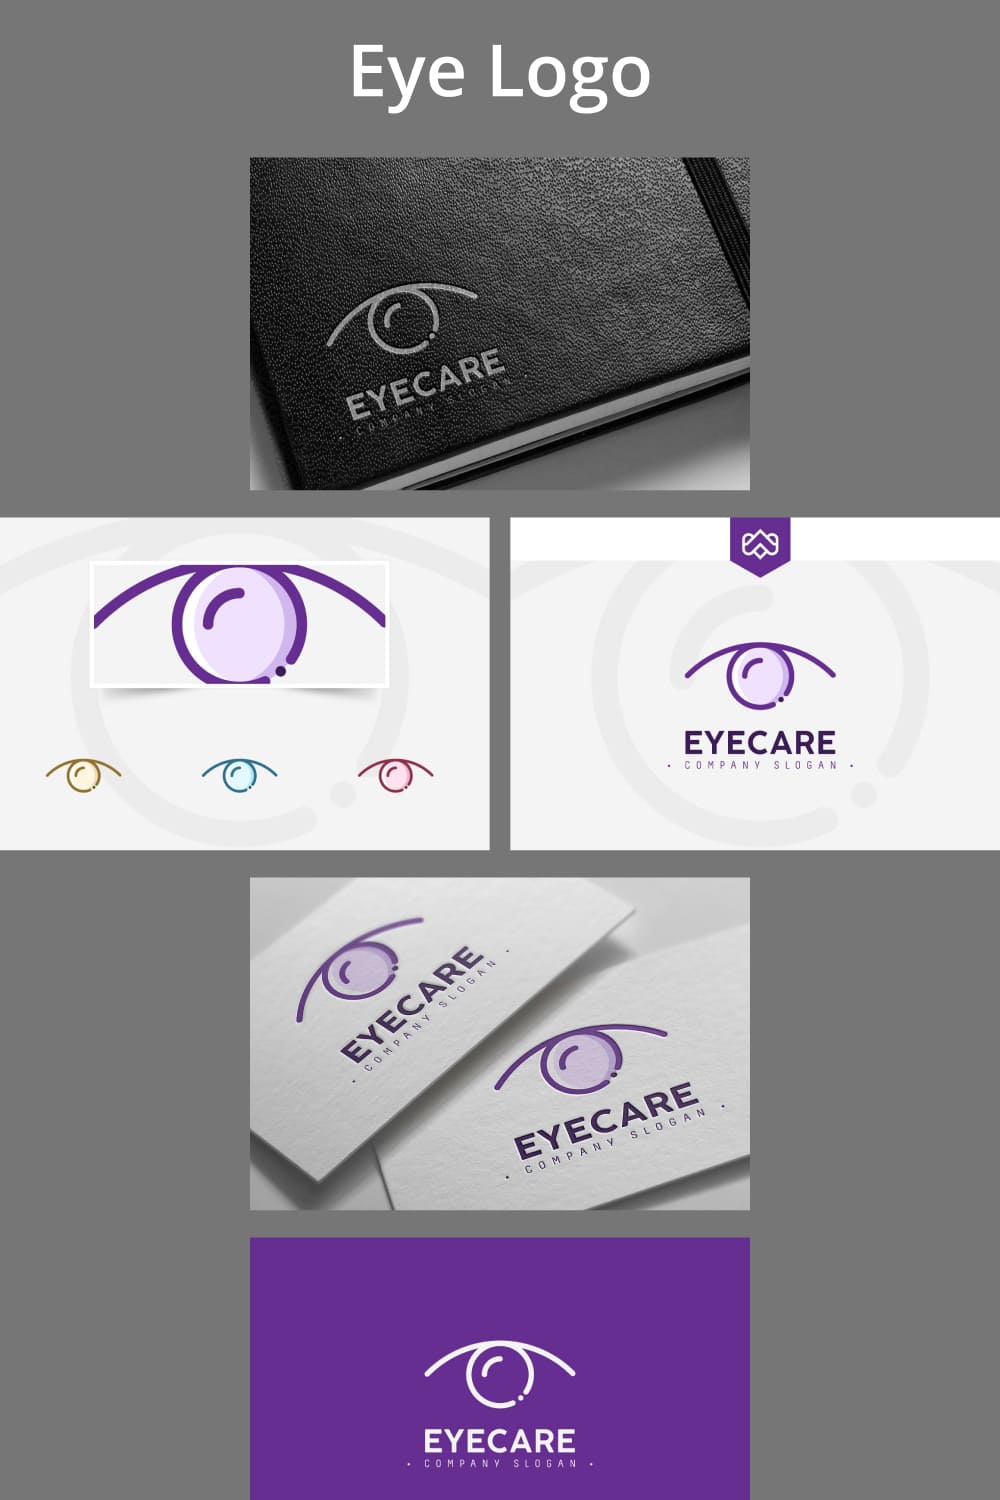 Eye Logo - pinterest image preview.